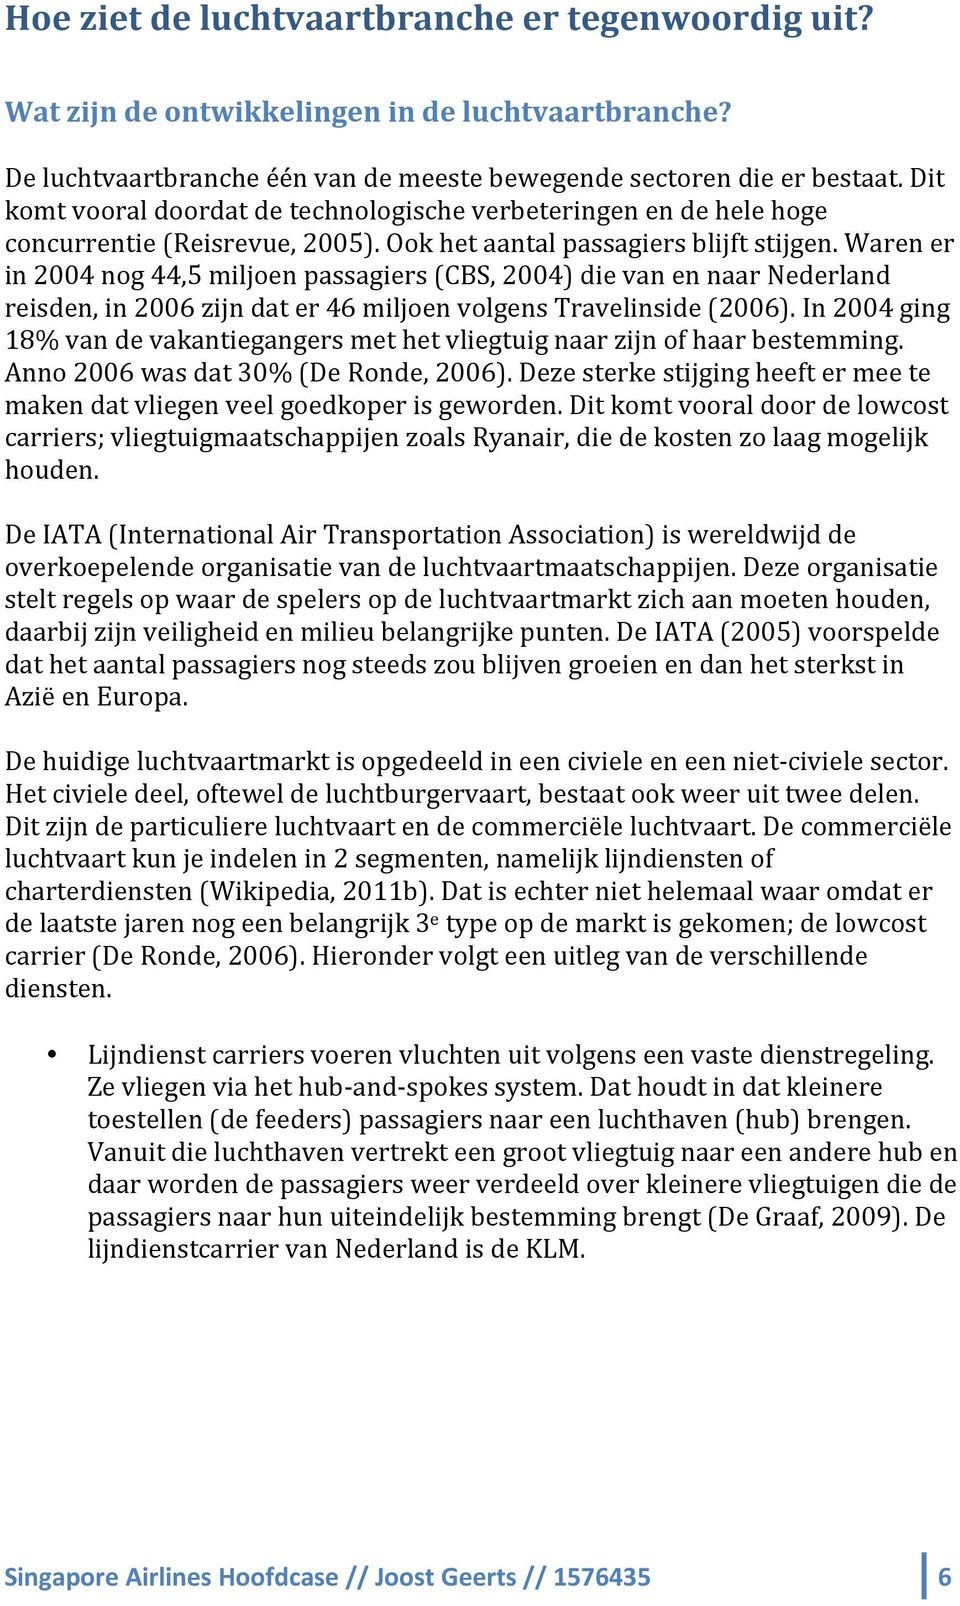 Waren er in 2004 nog 44,5 miljoen passagiers (CBS, 2004) die van en naar Nederland reisden, in 2006 zijn dat er 46 miljoen volgens Travelinside (2006).